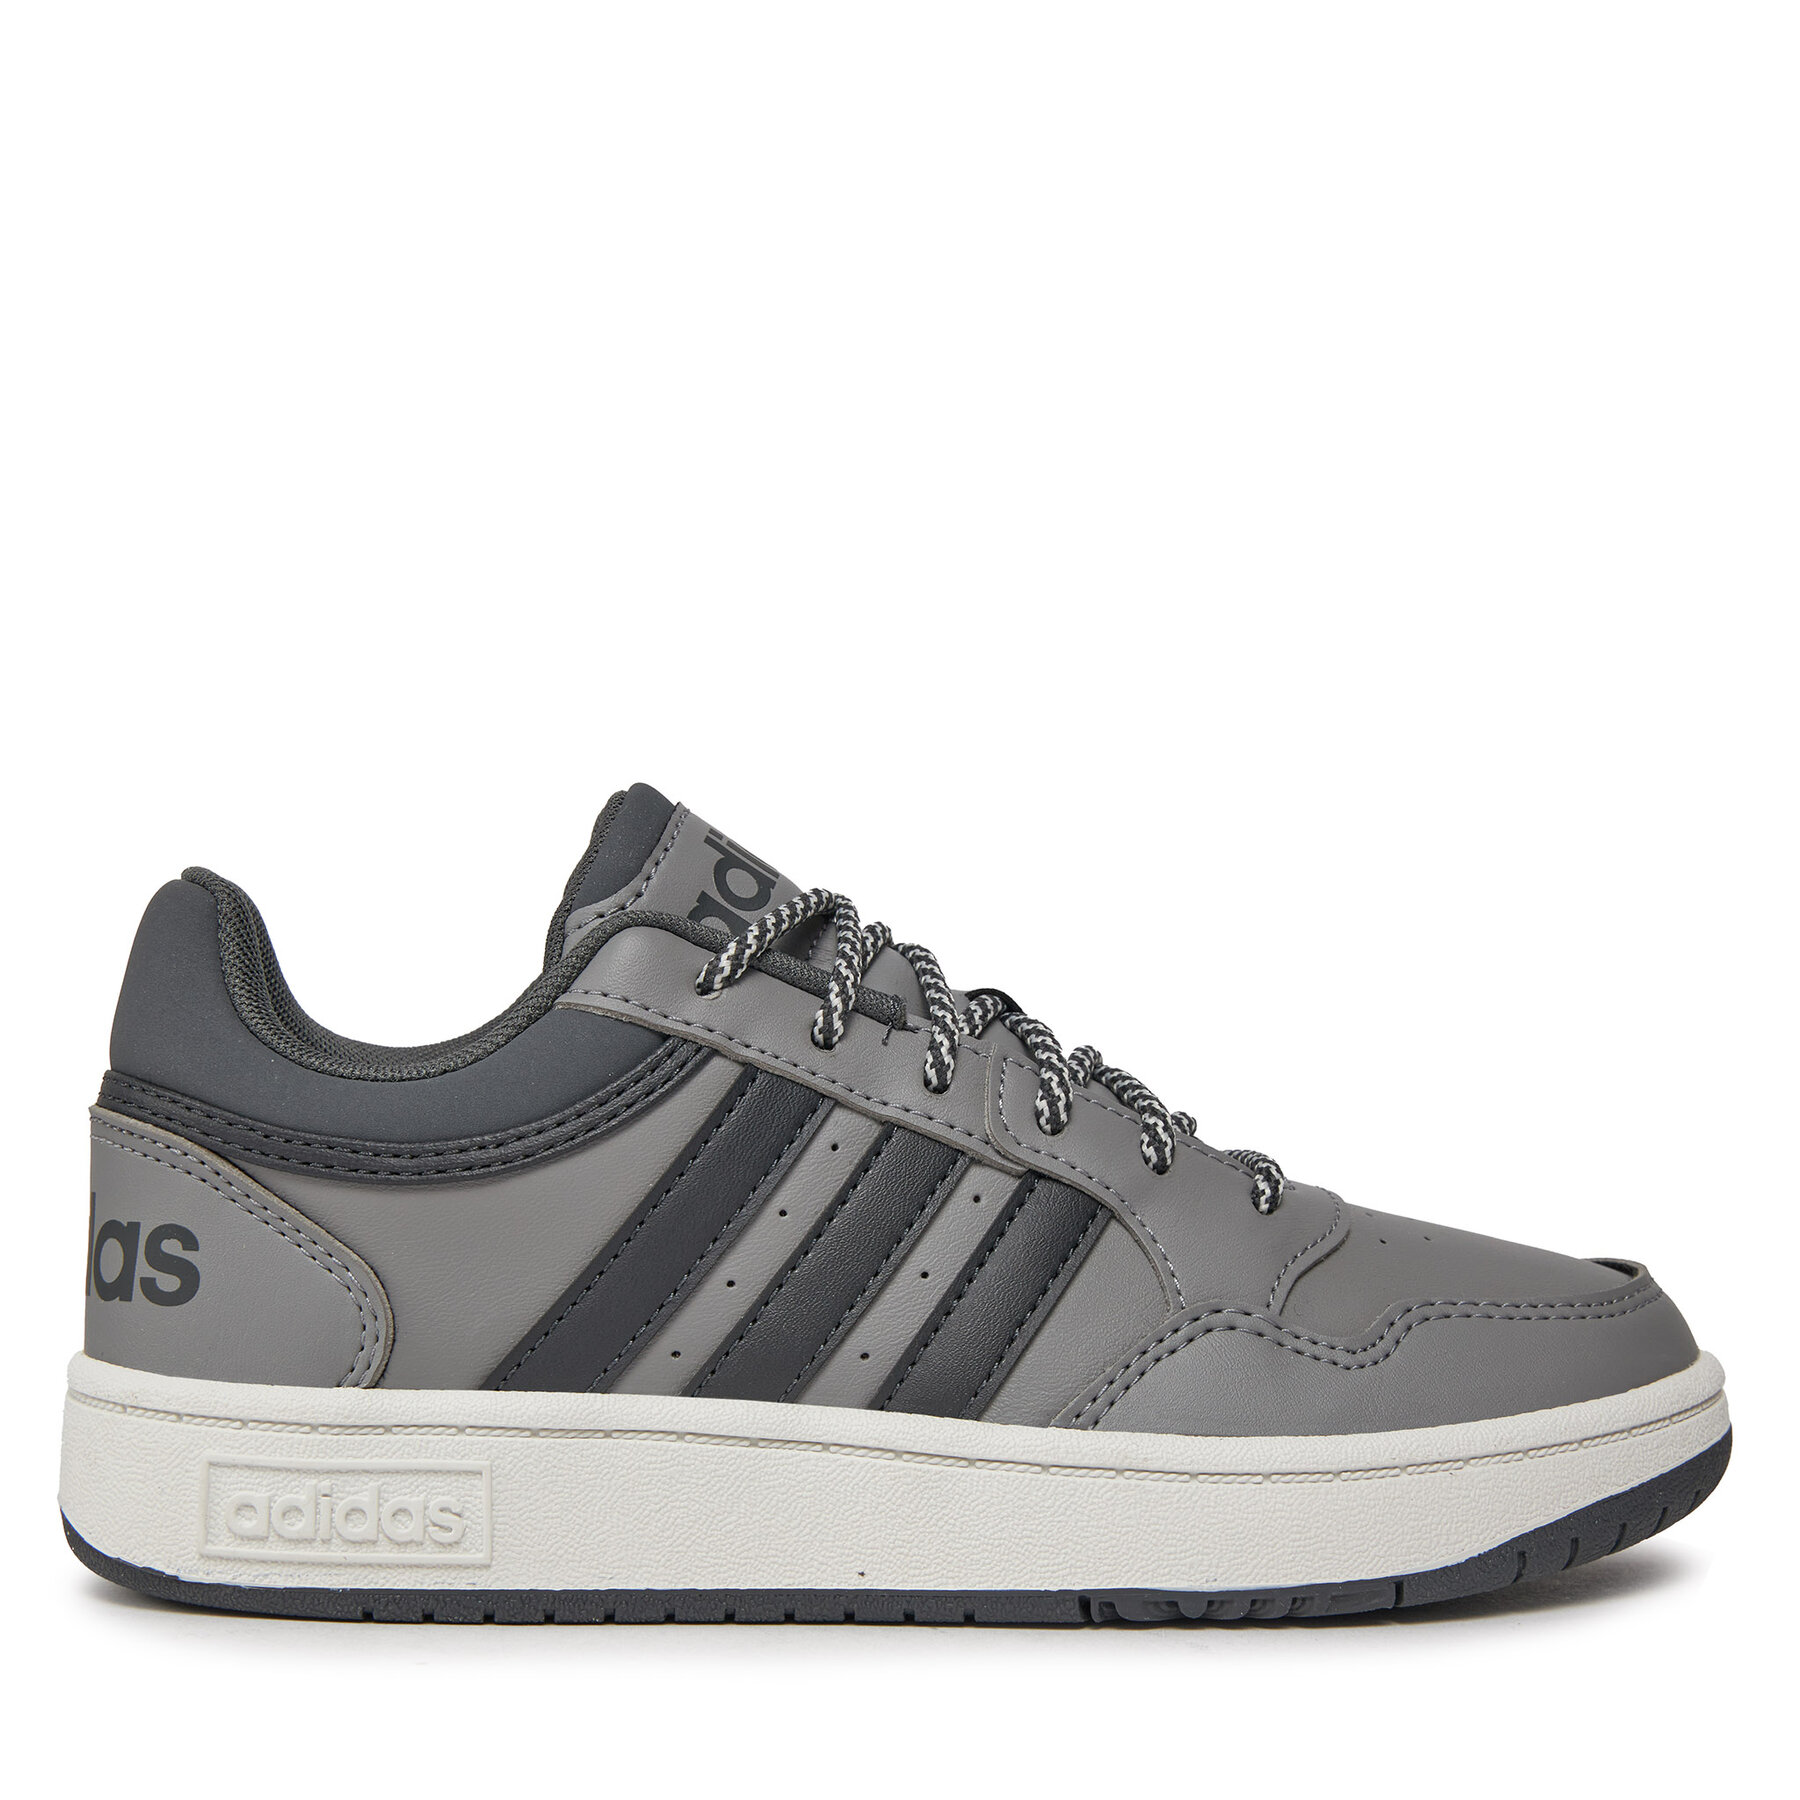 Comprar en oferta Adidas Hoops 3.0 Kids grey 3/carbon/grey 6